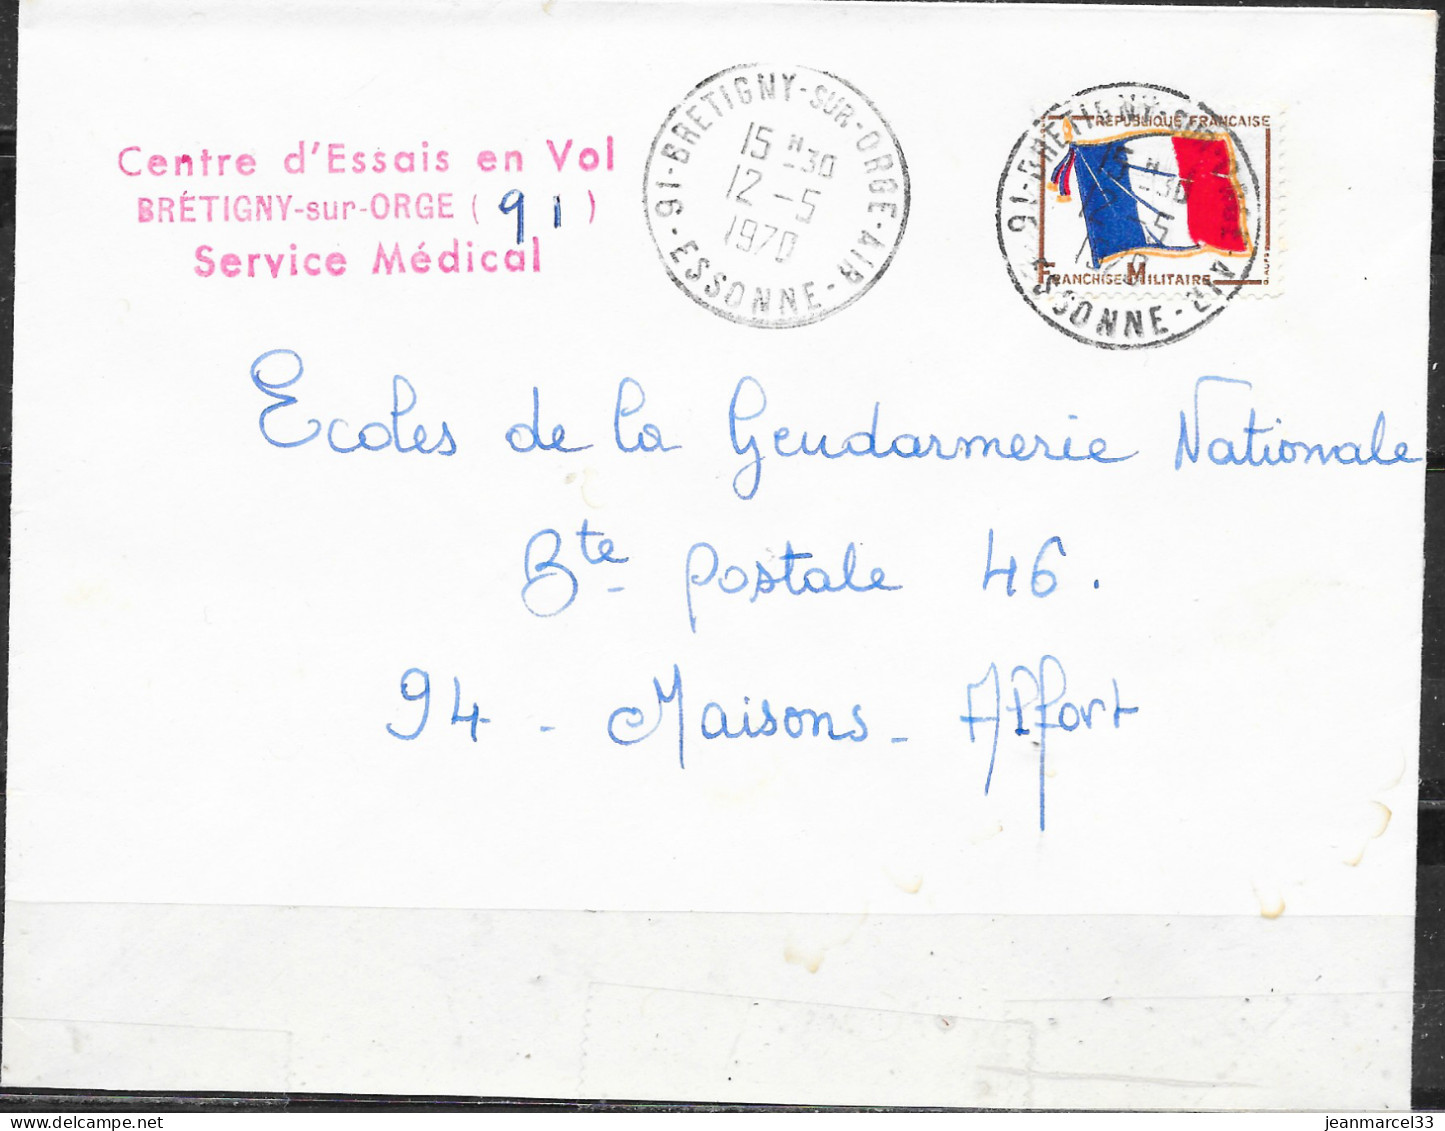 Cachet Manuel 91-Bretigny-sur-Orge-Air I2-5 I970 Sur Timbre FM Drapeau Tricolore - Military Airmail